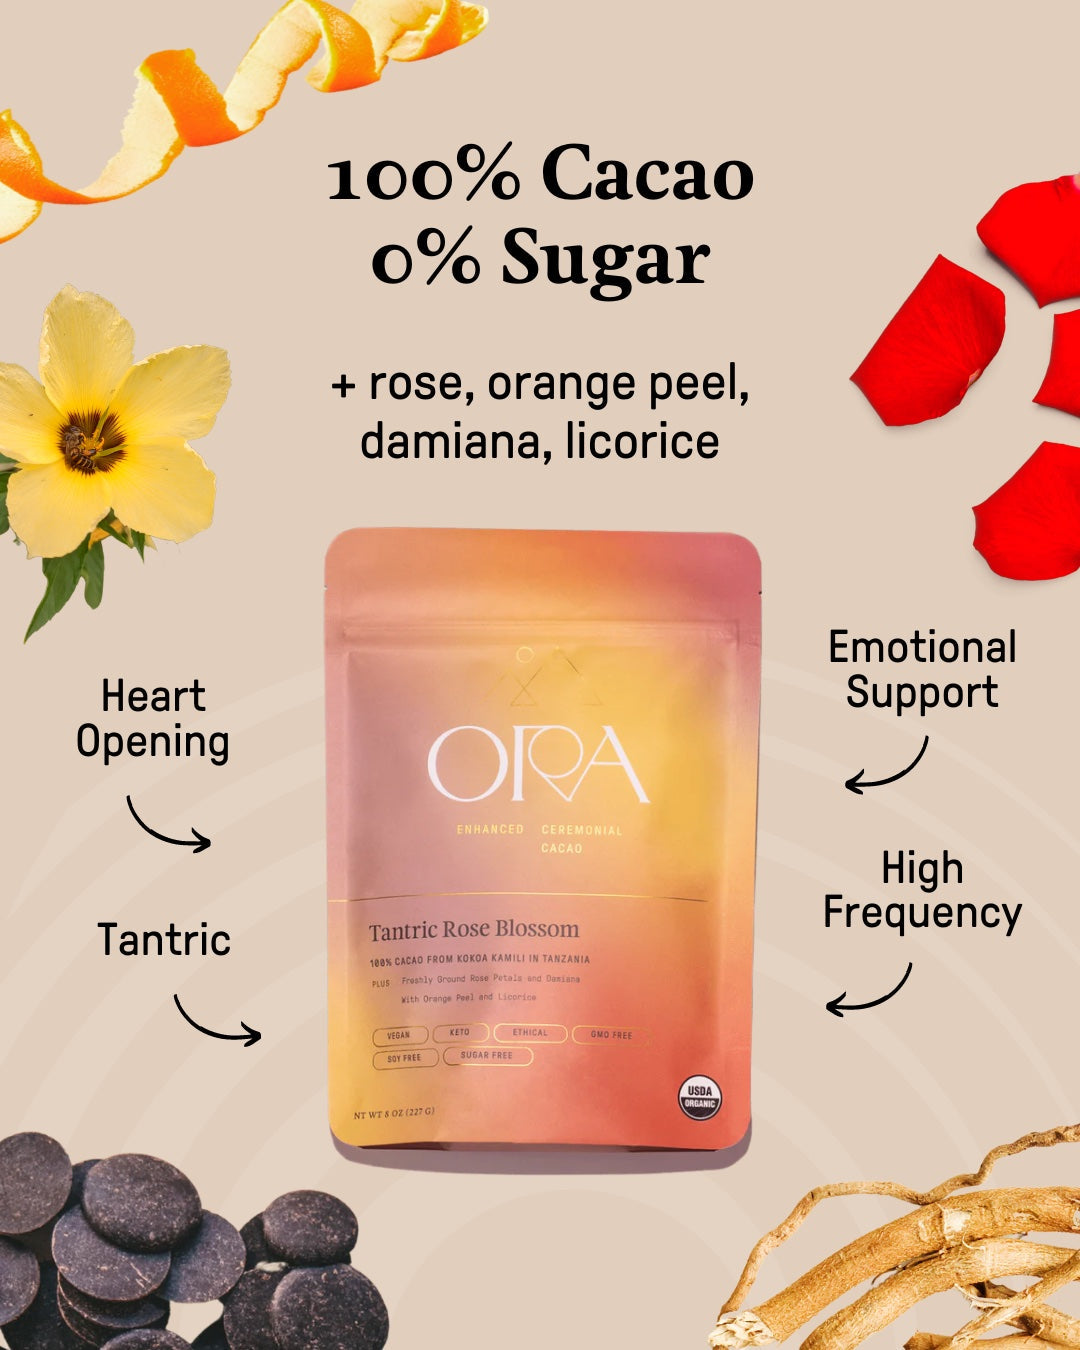 Ora Ceremonial Cacao Tantric Rose Blossom Graphic